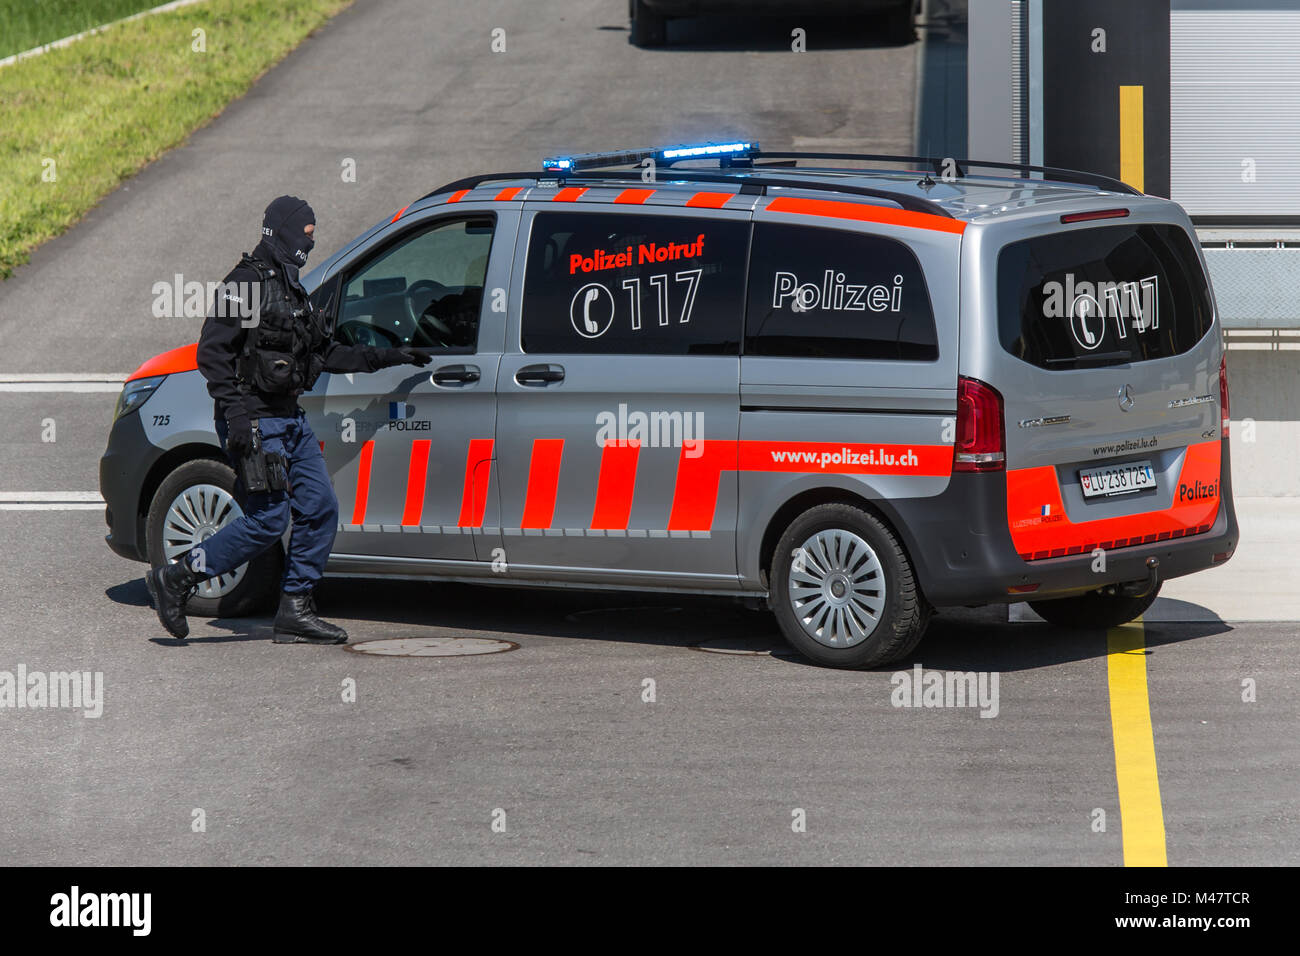 Polizeiauto mit Sondergruppe Luchs von der Luzerner Polizei Foto Stock